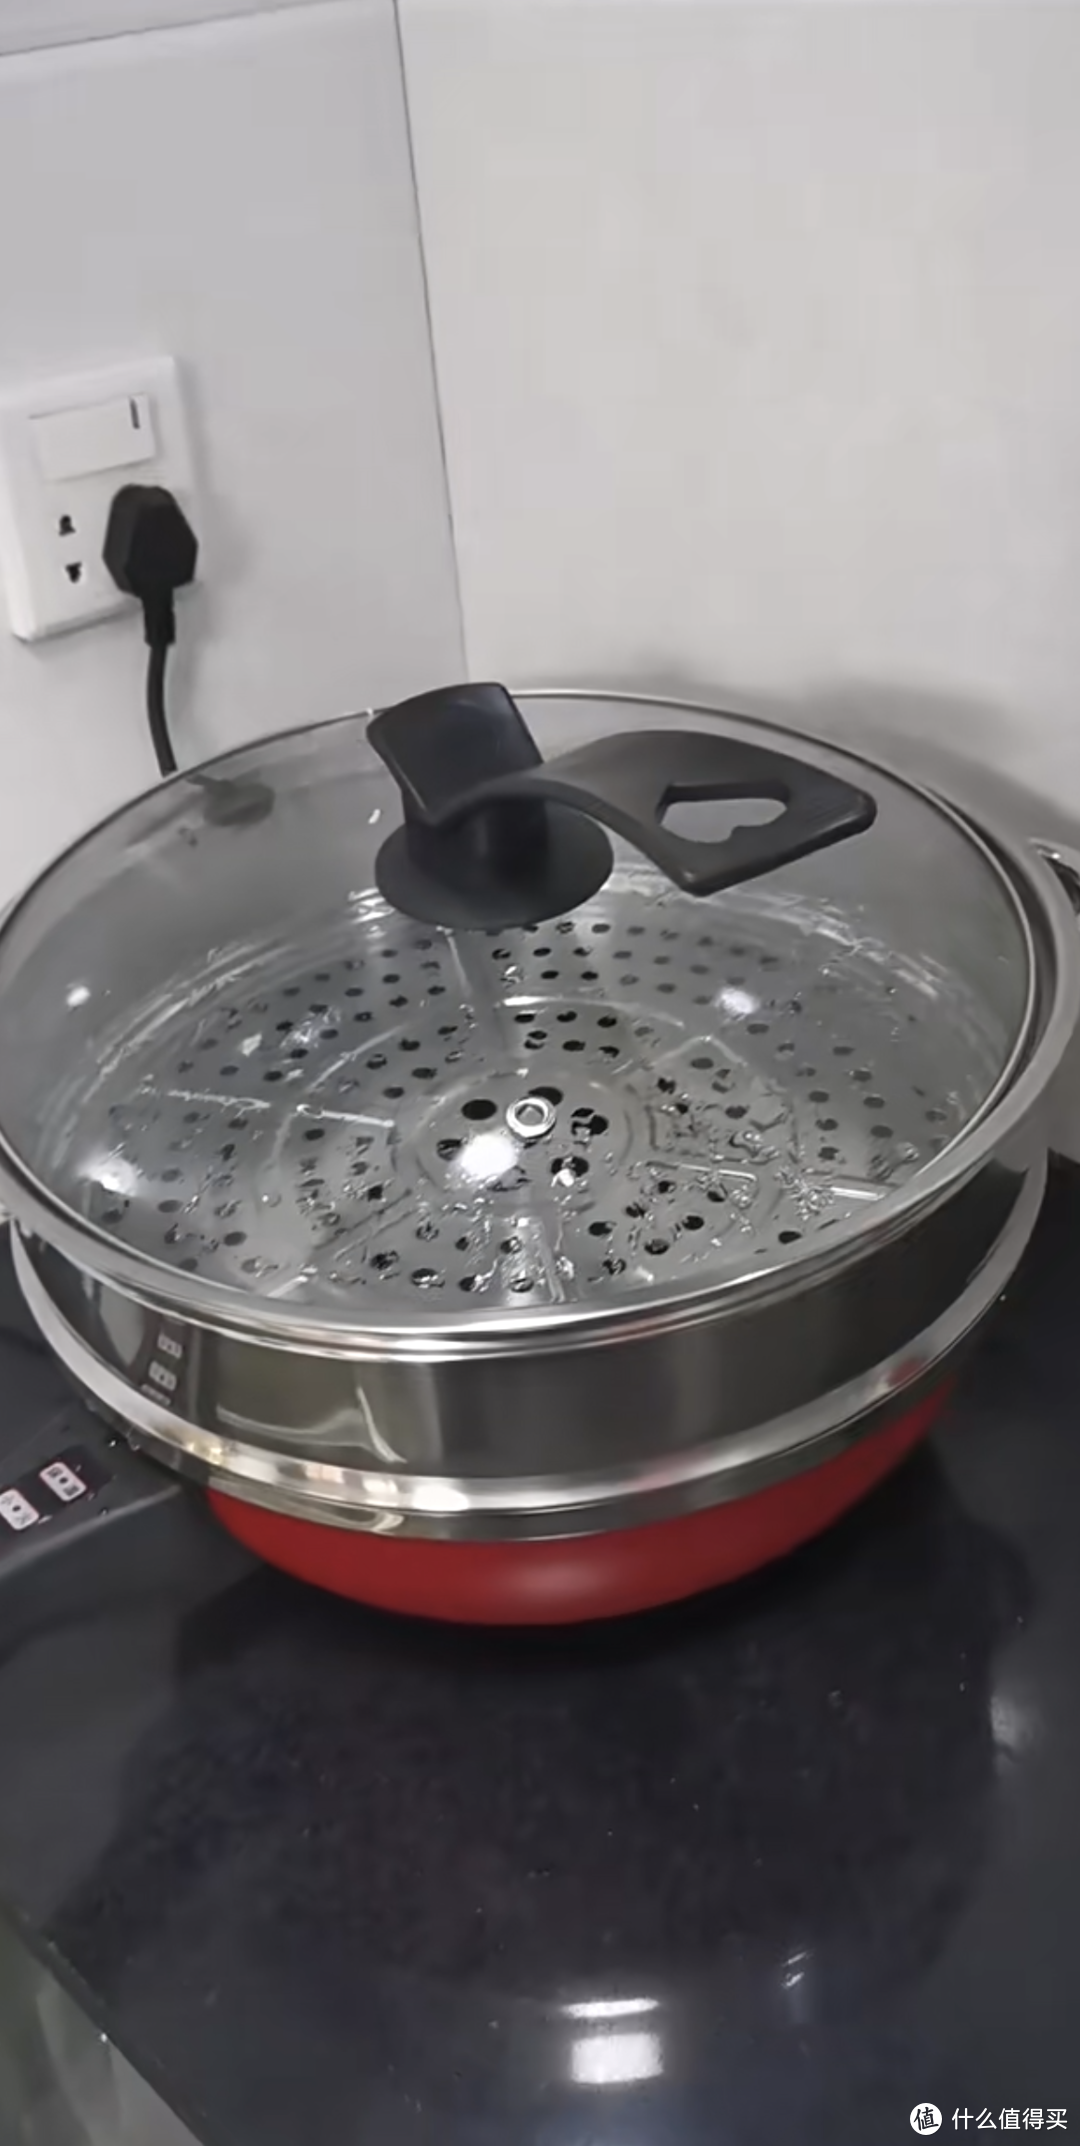 家用电器之蒸炒一体锅。